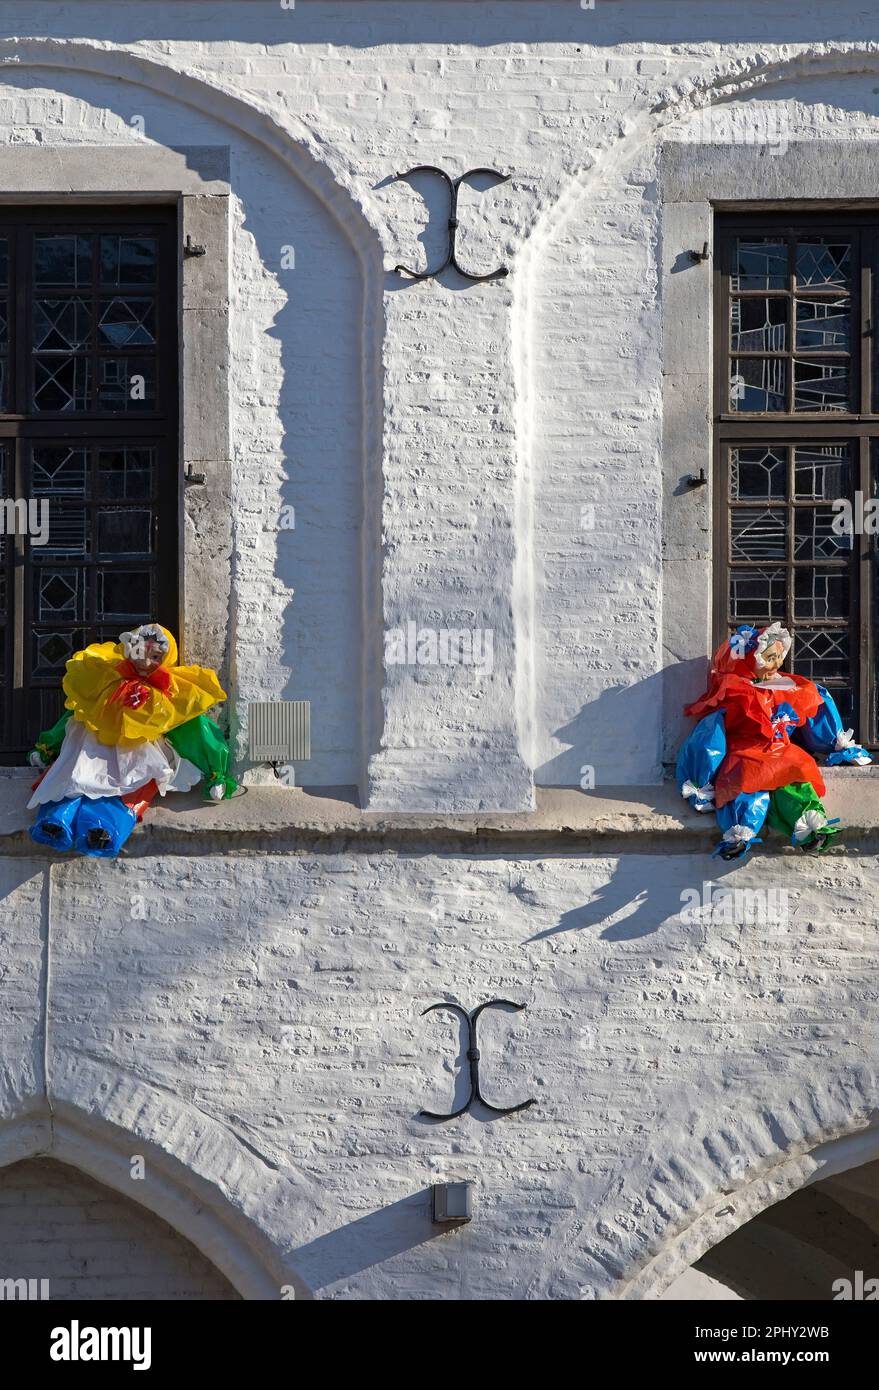 karnevalszeit mit Plastikfiguren von Moehnen an den Fenstern, Altes Rathaus, Deutschland, Nordrhein-Westfalen, Niederrhein, Erkelenz Stockfoto